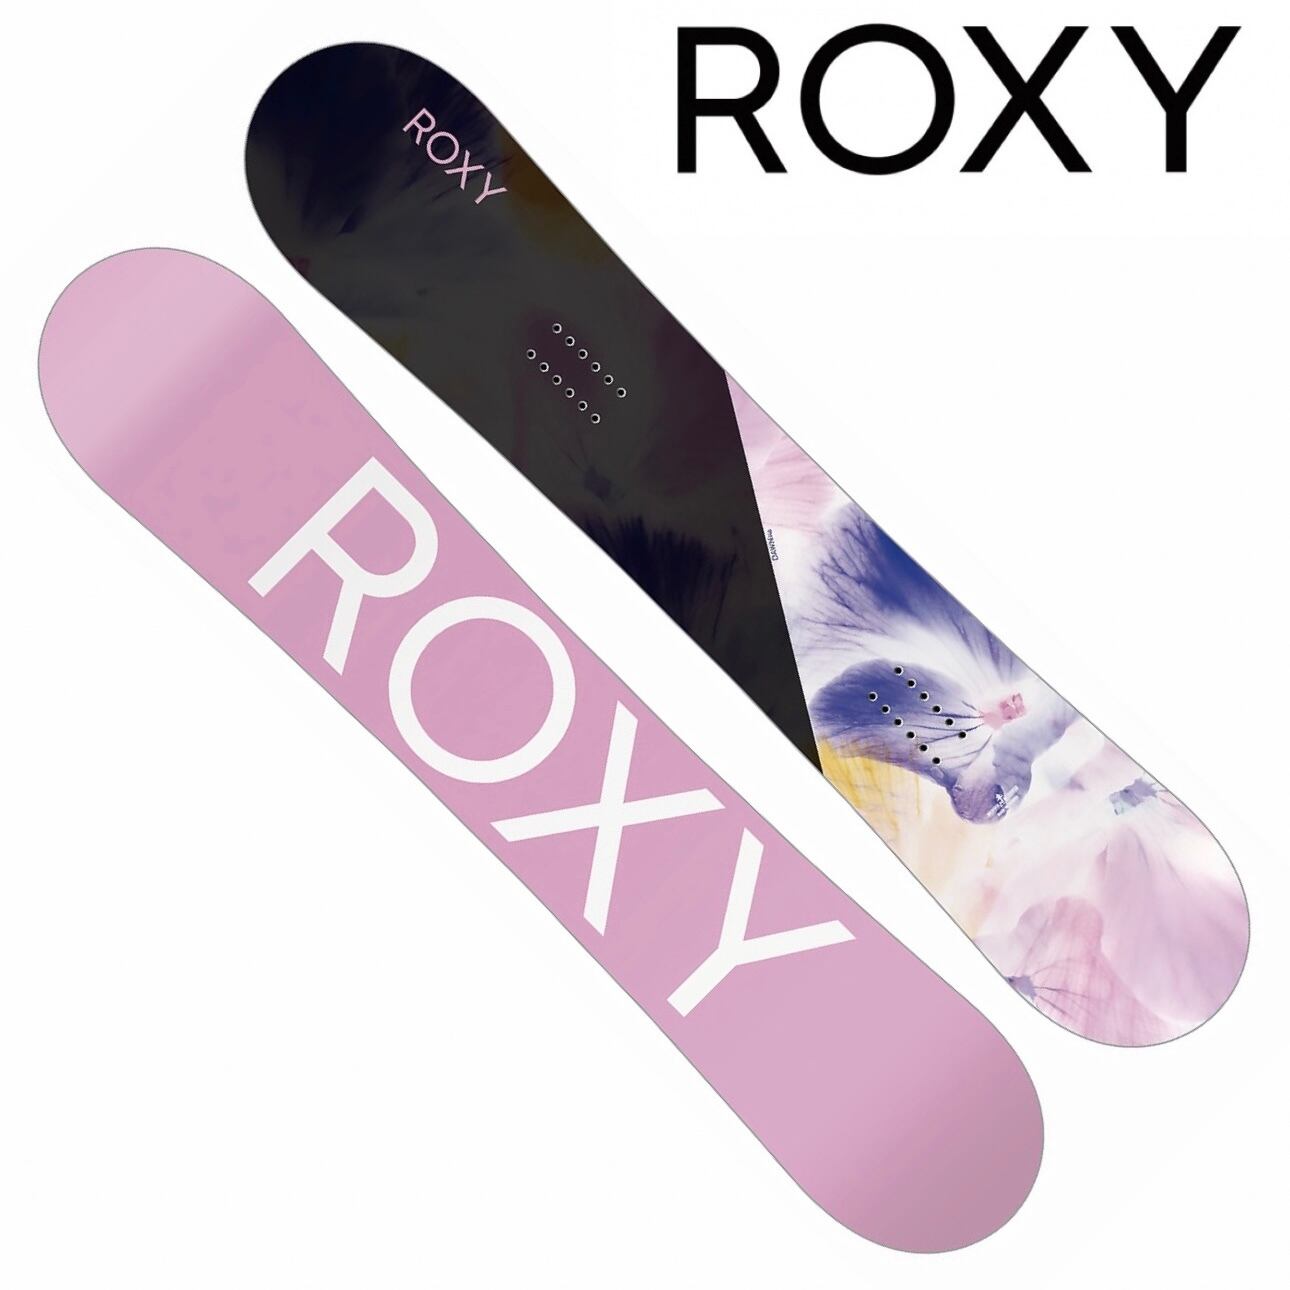 ROXY Suger 138 snowboard スノーボード